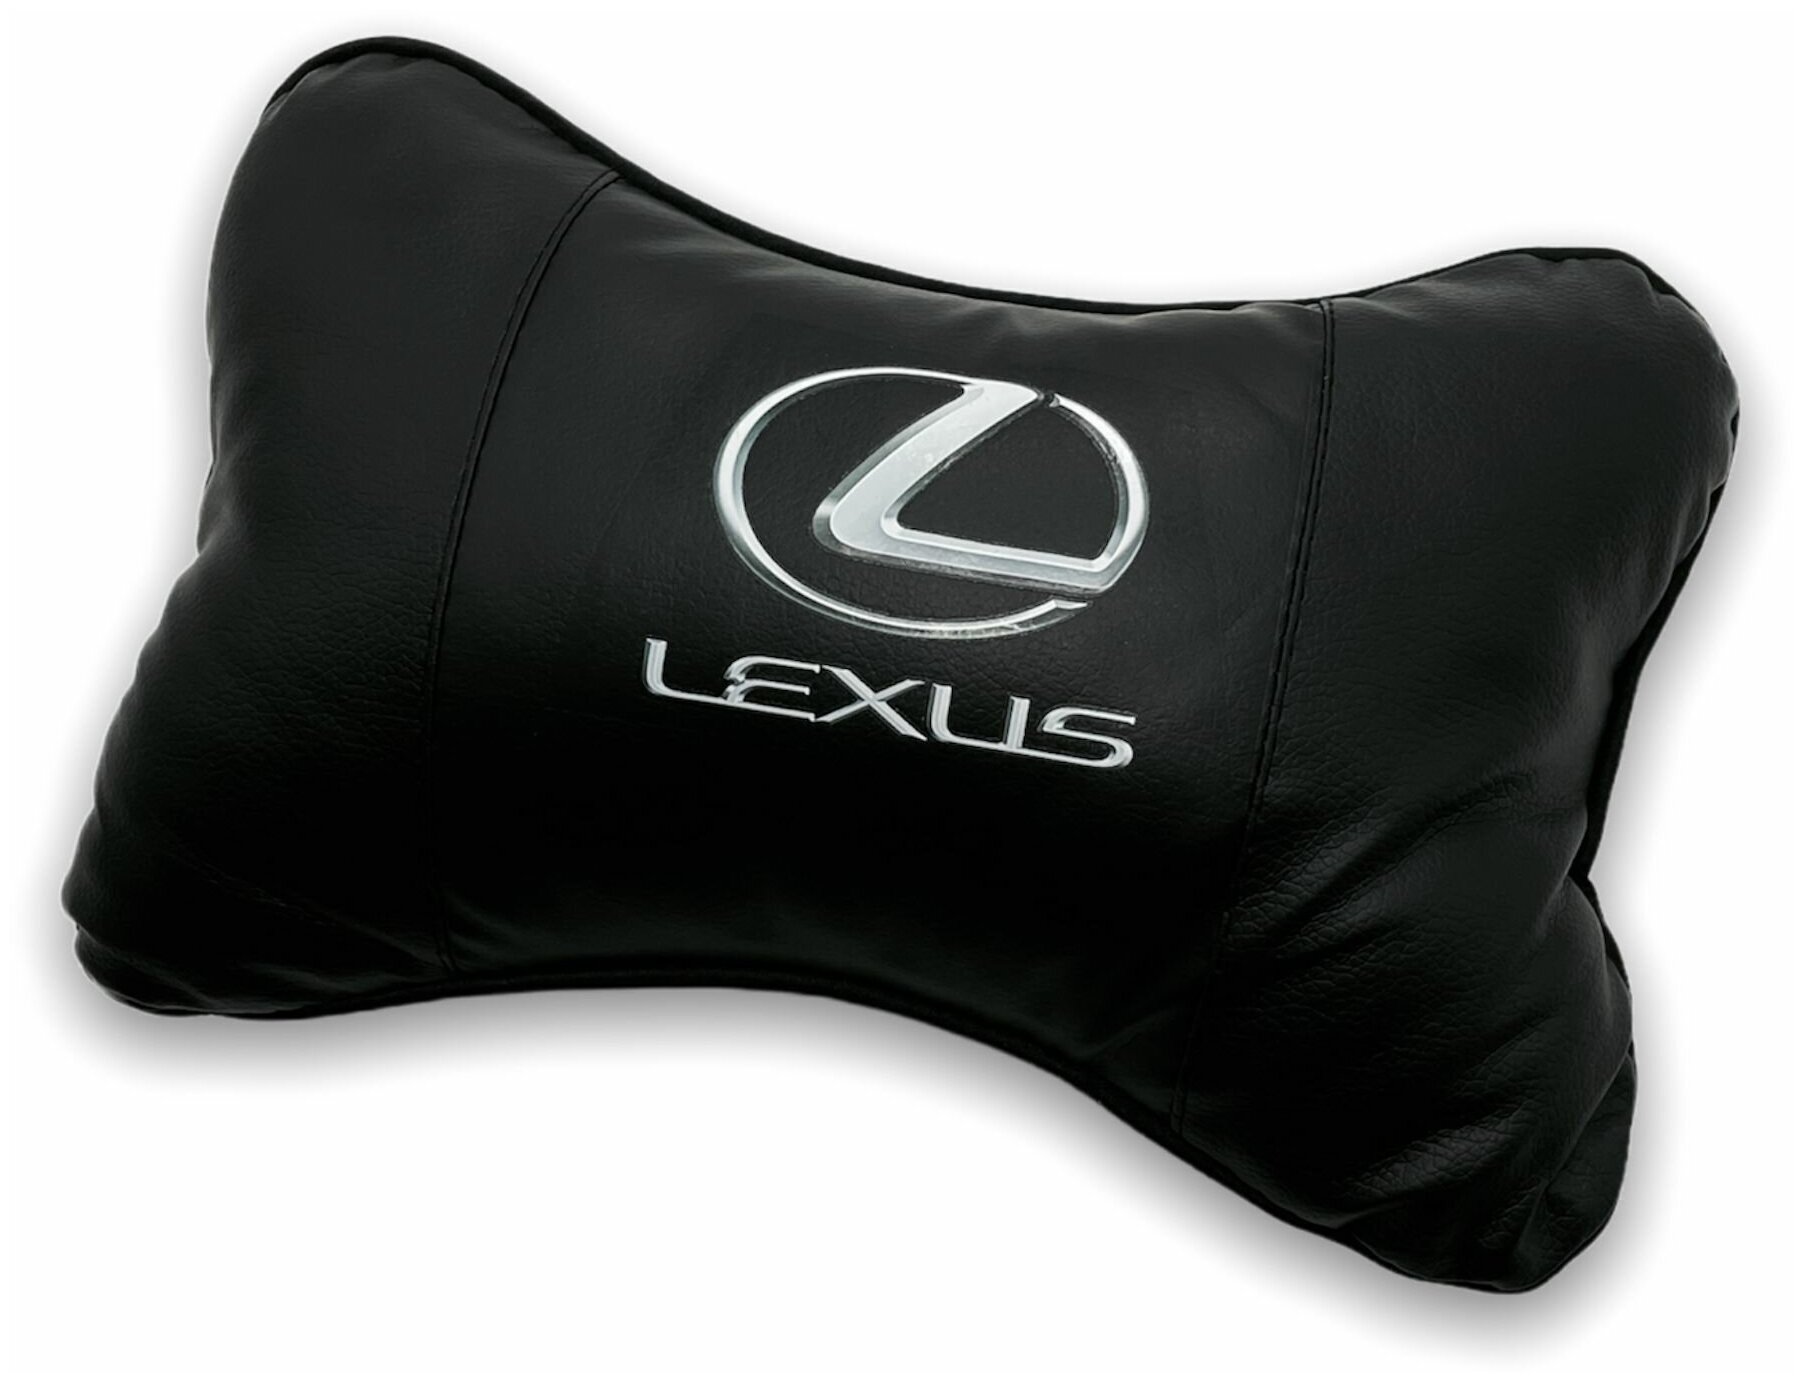 Автомобильная подушка для шеи на подголовник сиденья, автоподушка косточка MejiCar с логотипом Lexus под черный салон